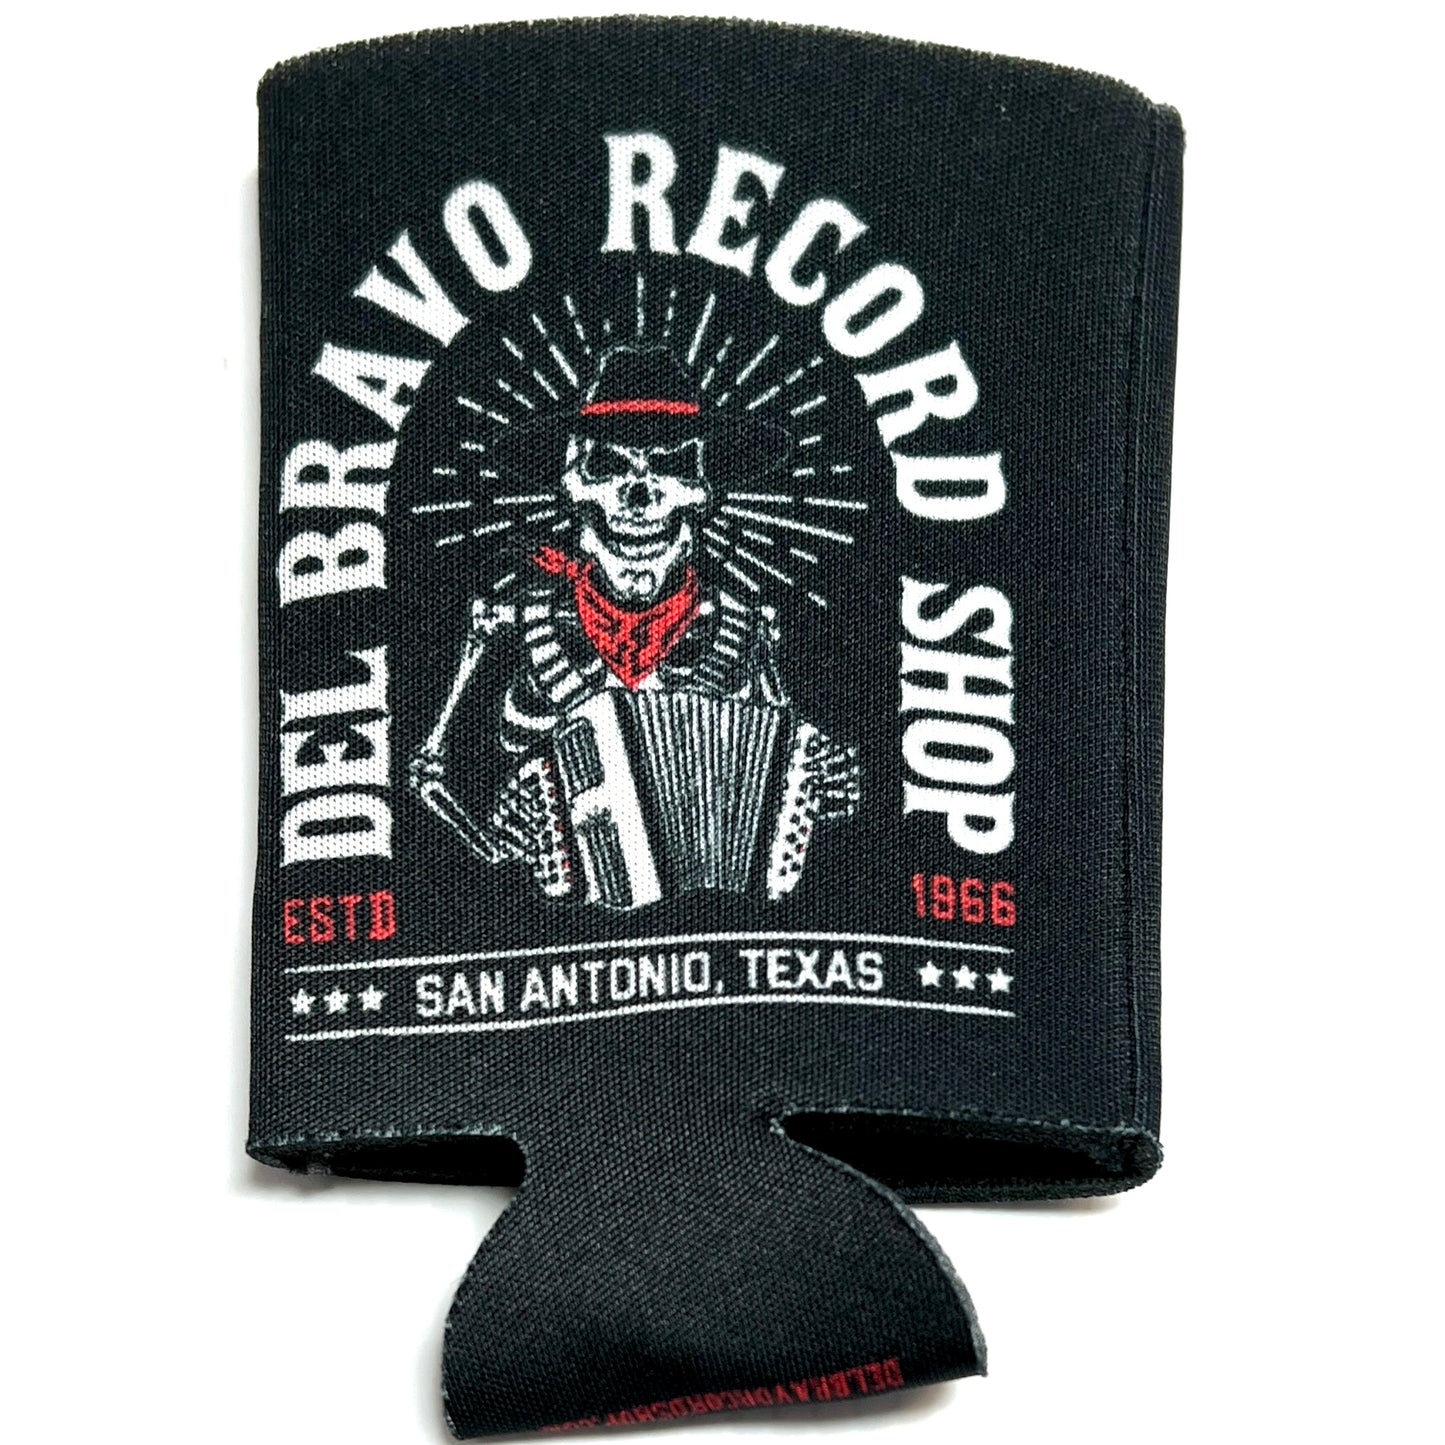 Del Bravo Record Shop Black Koozie